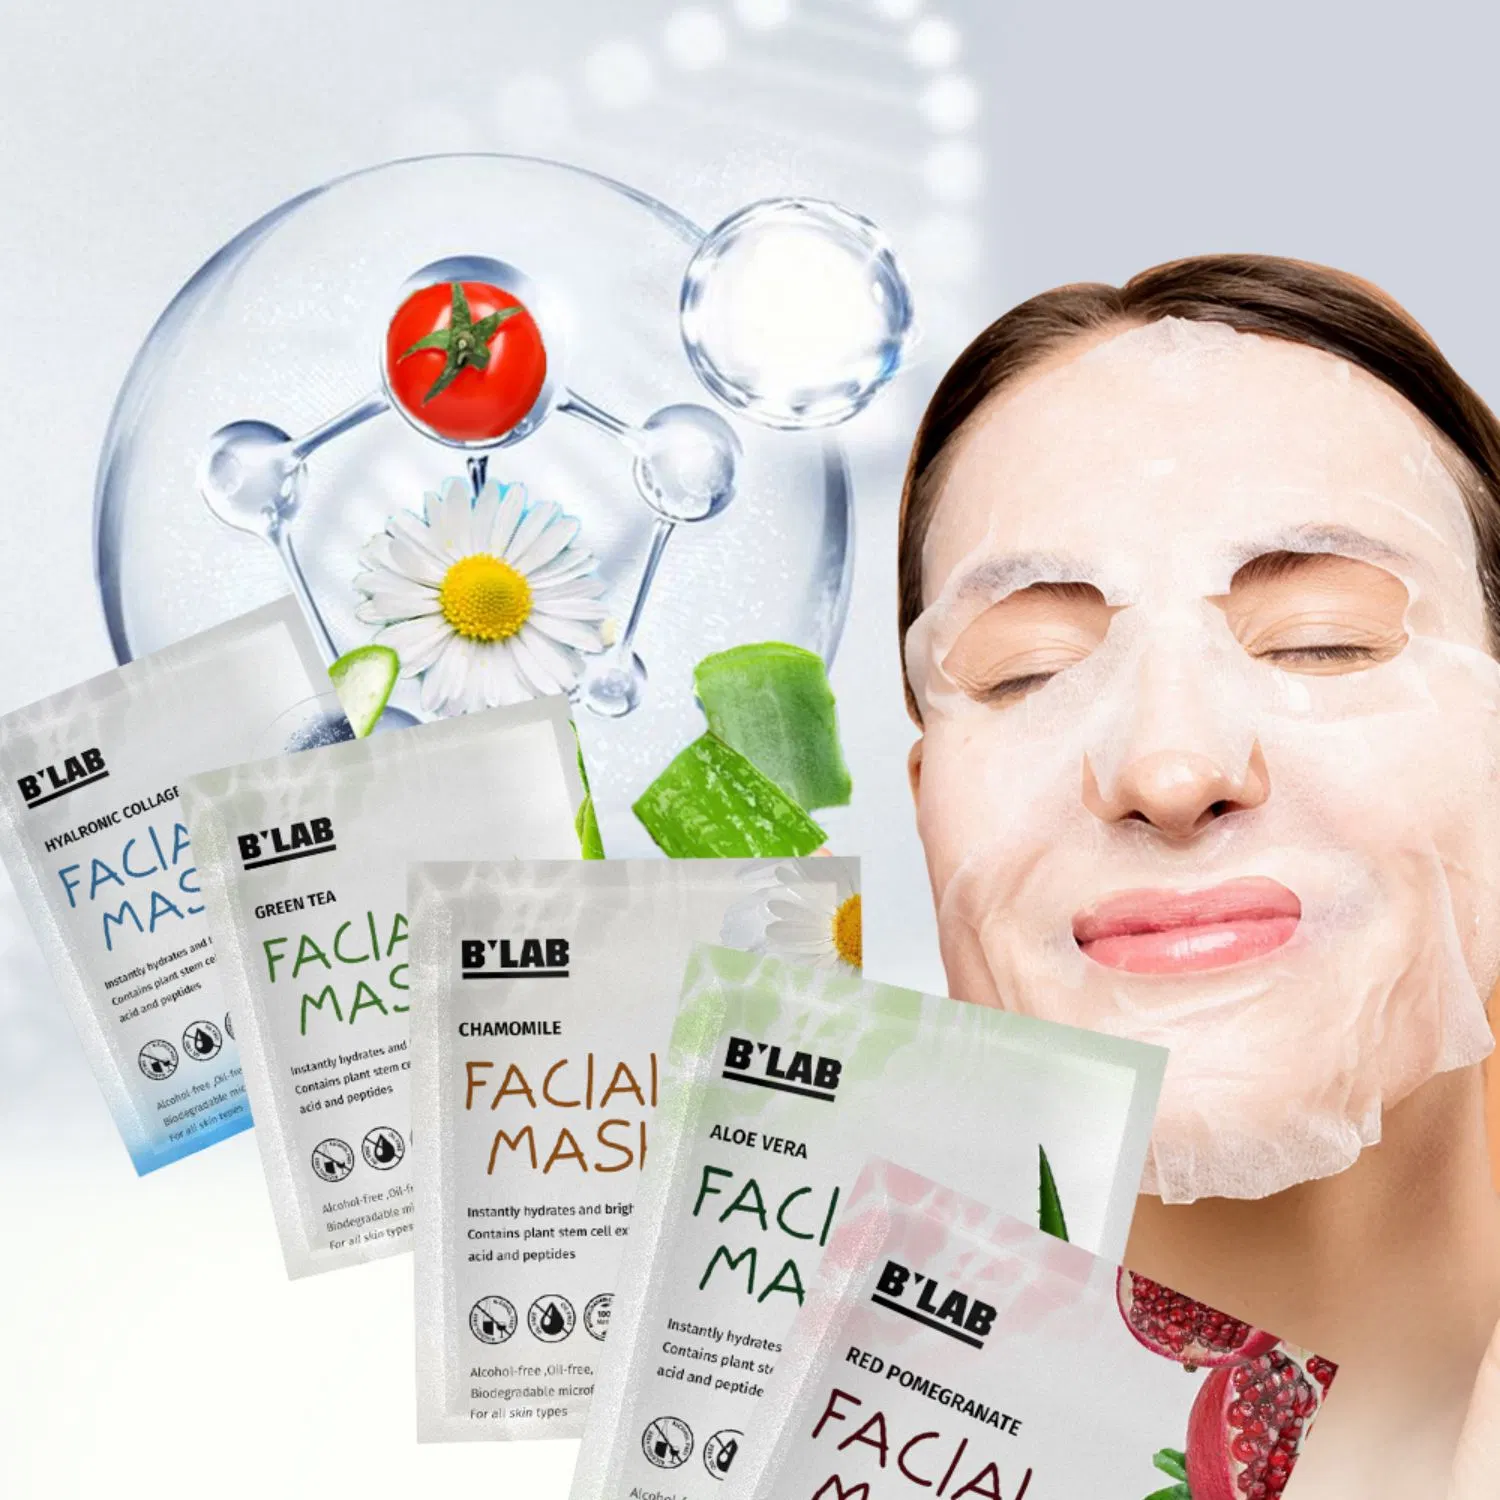 OEM Private Label Gesichtsmaske Hautpflege Whitening Feuchtigkeitsspendend Einweg Gesichtsmaske